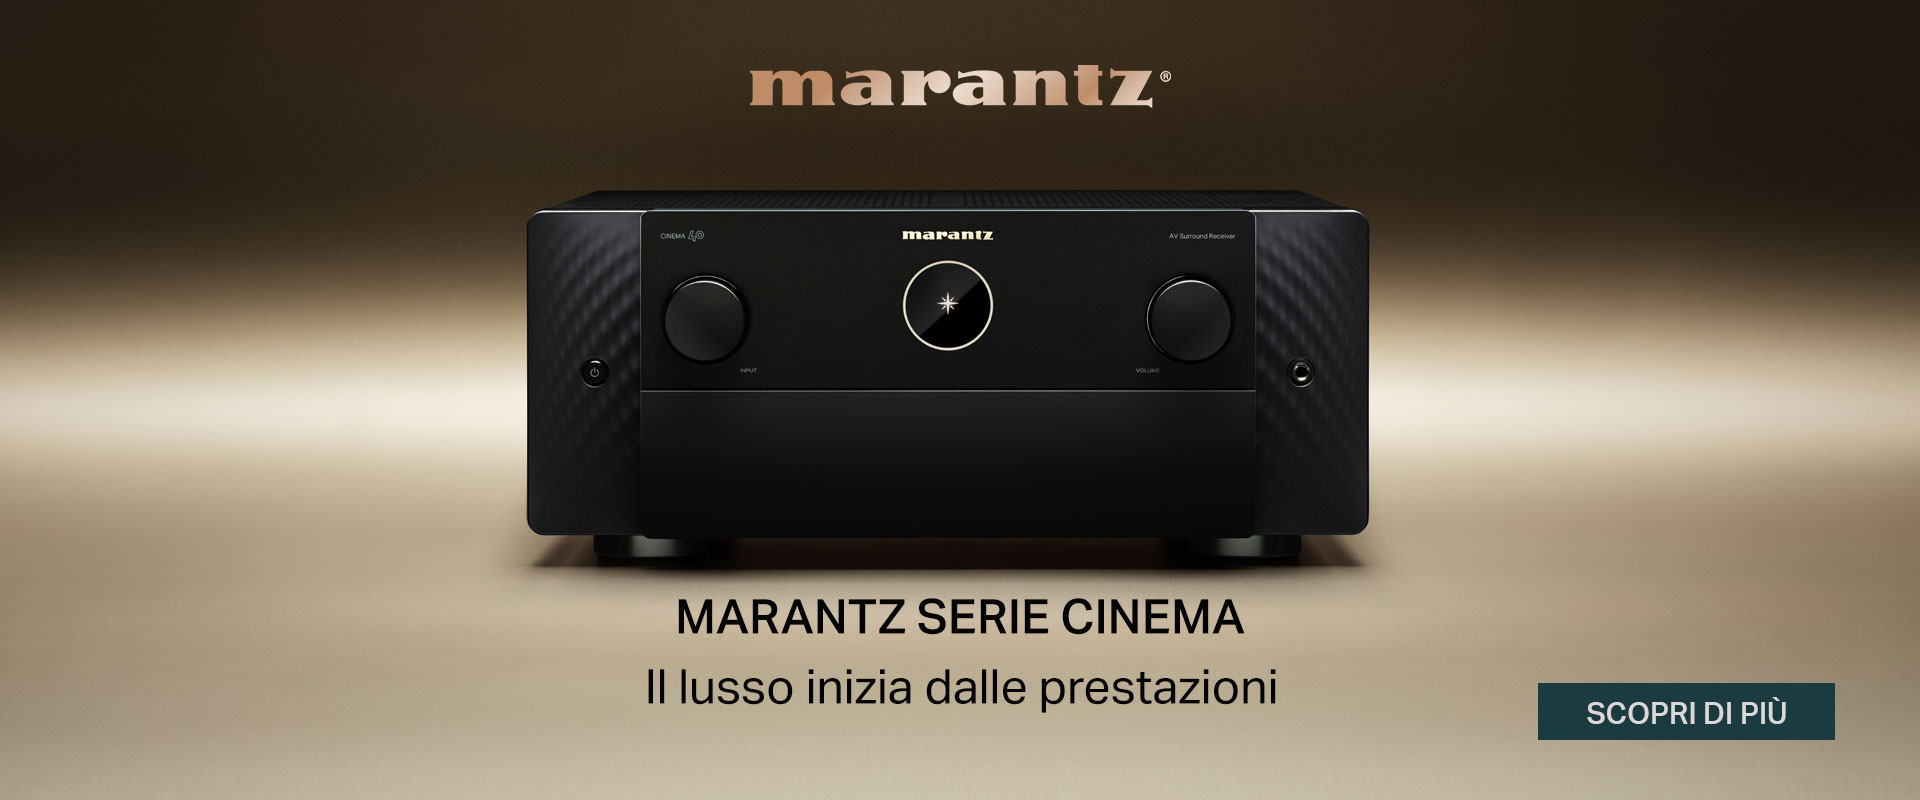 Marantz Serie Cinema